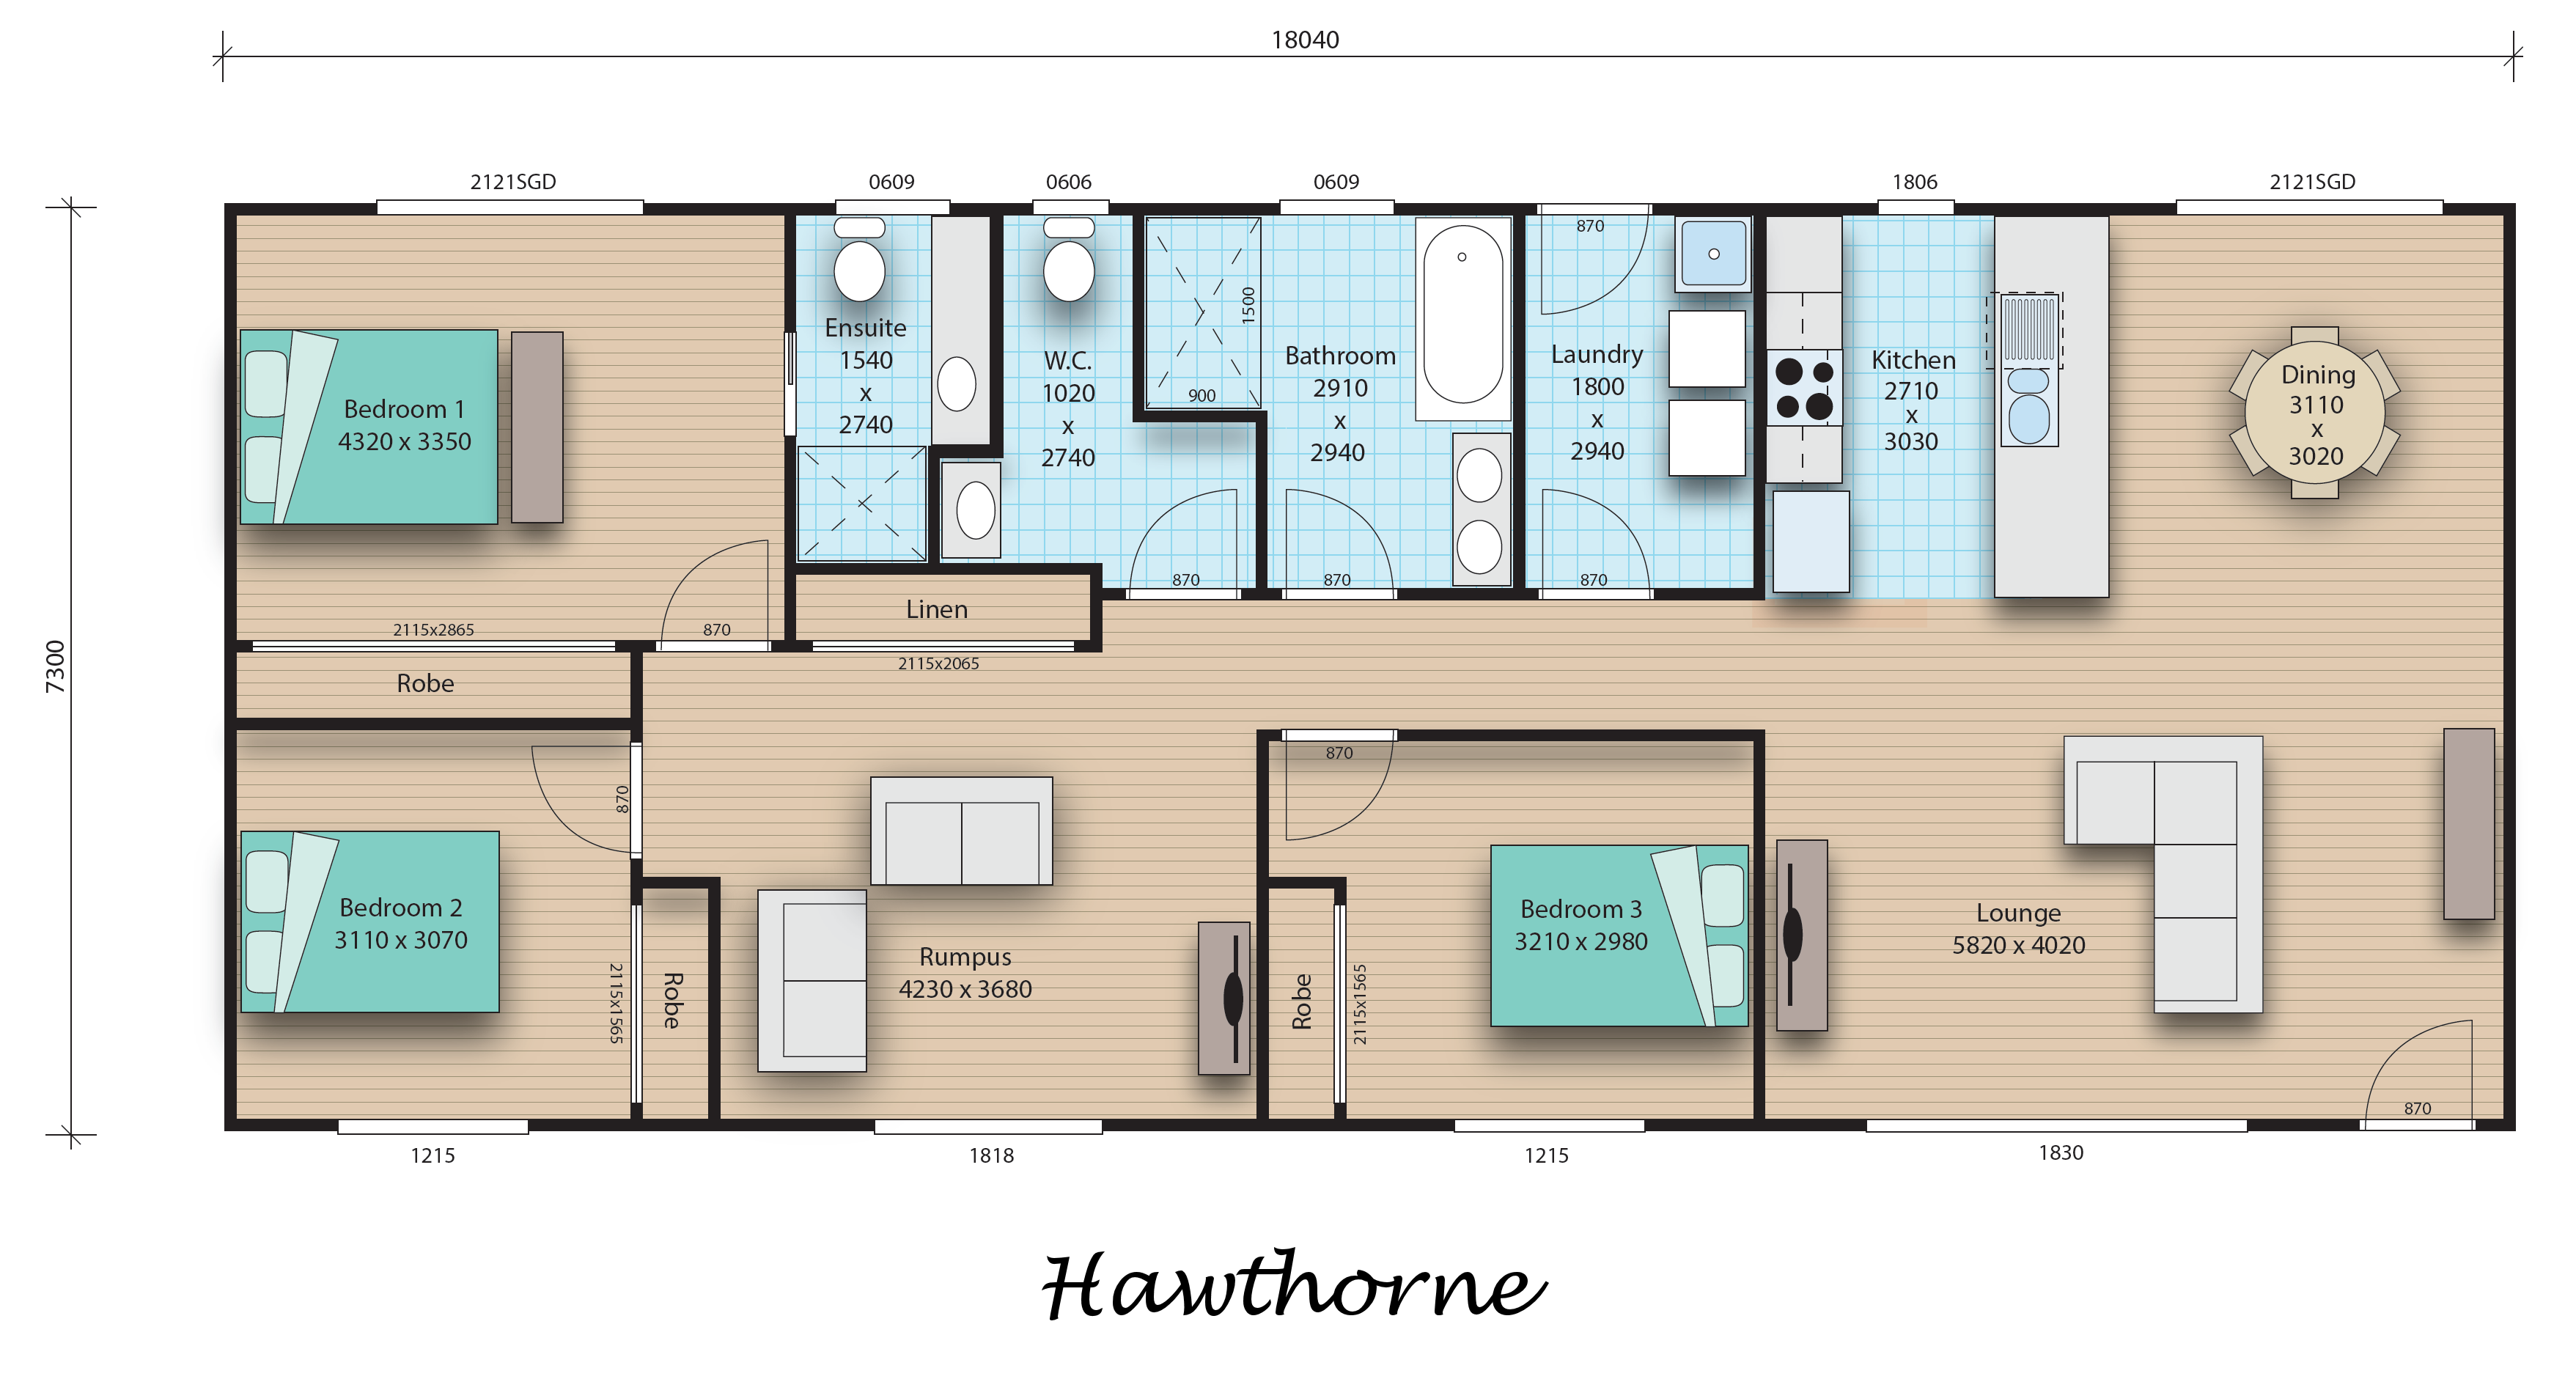 Hawthorn floorplan image